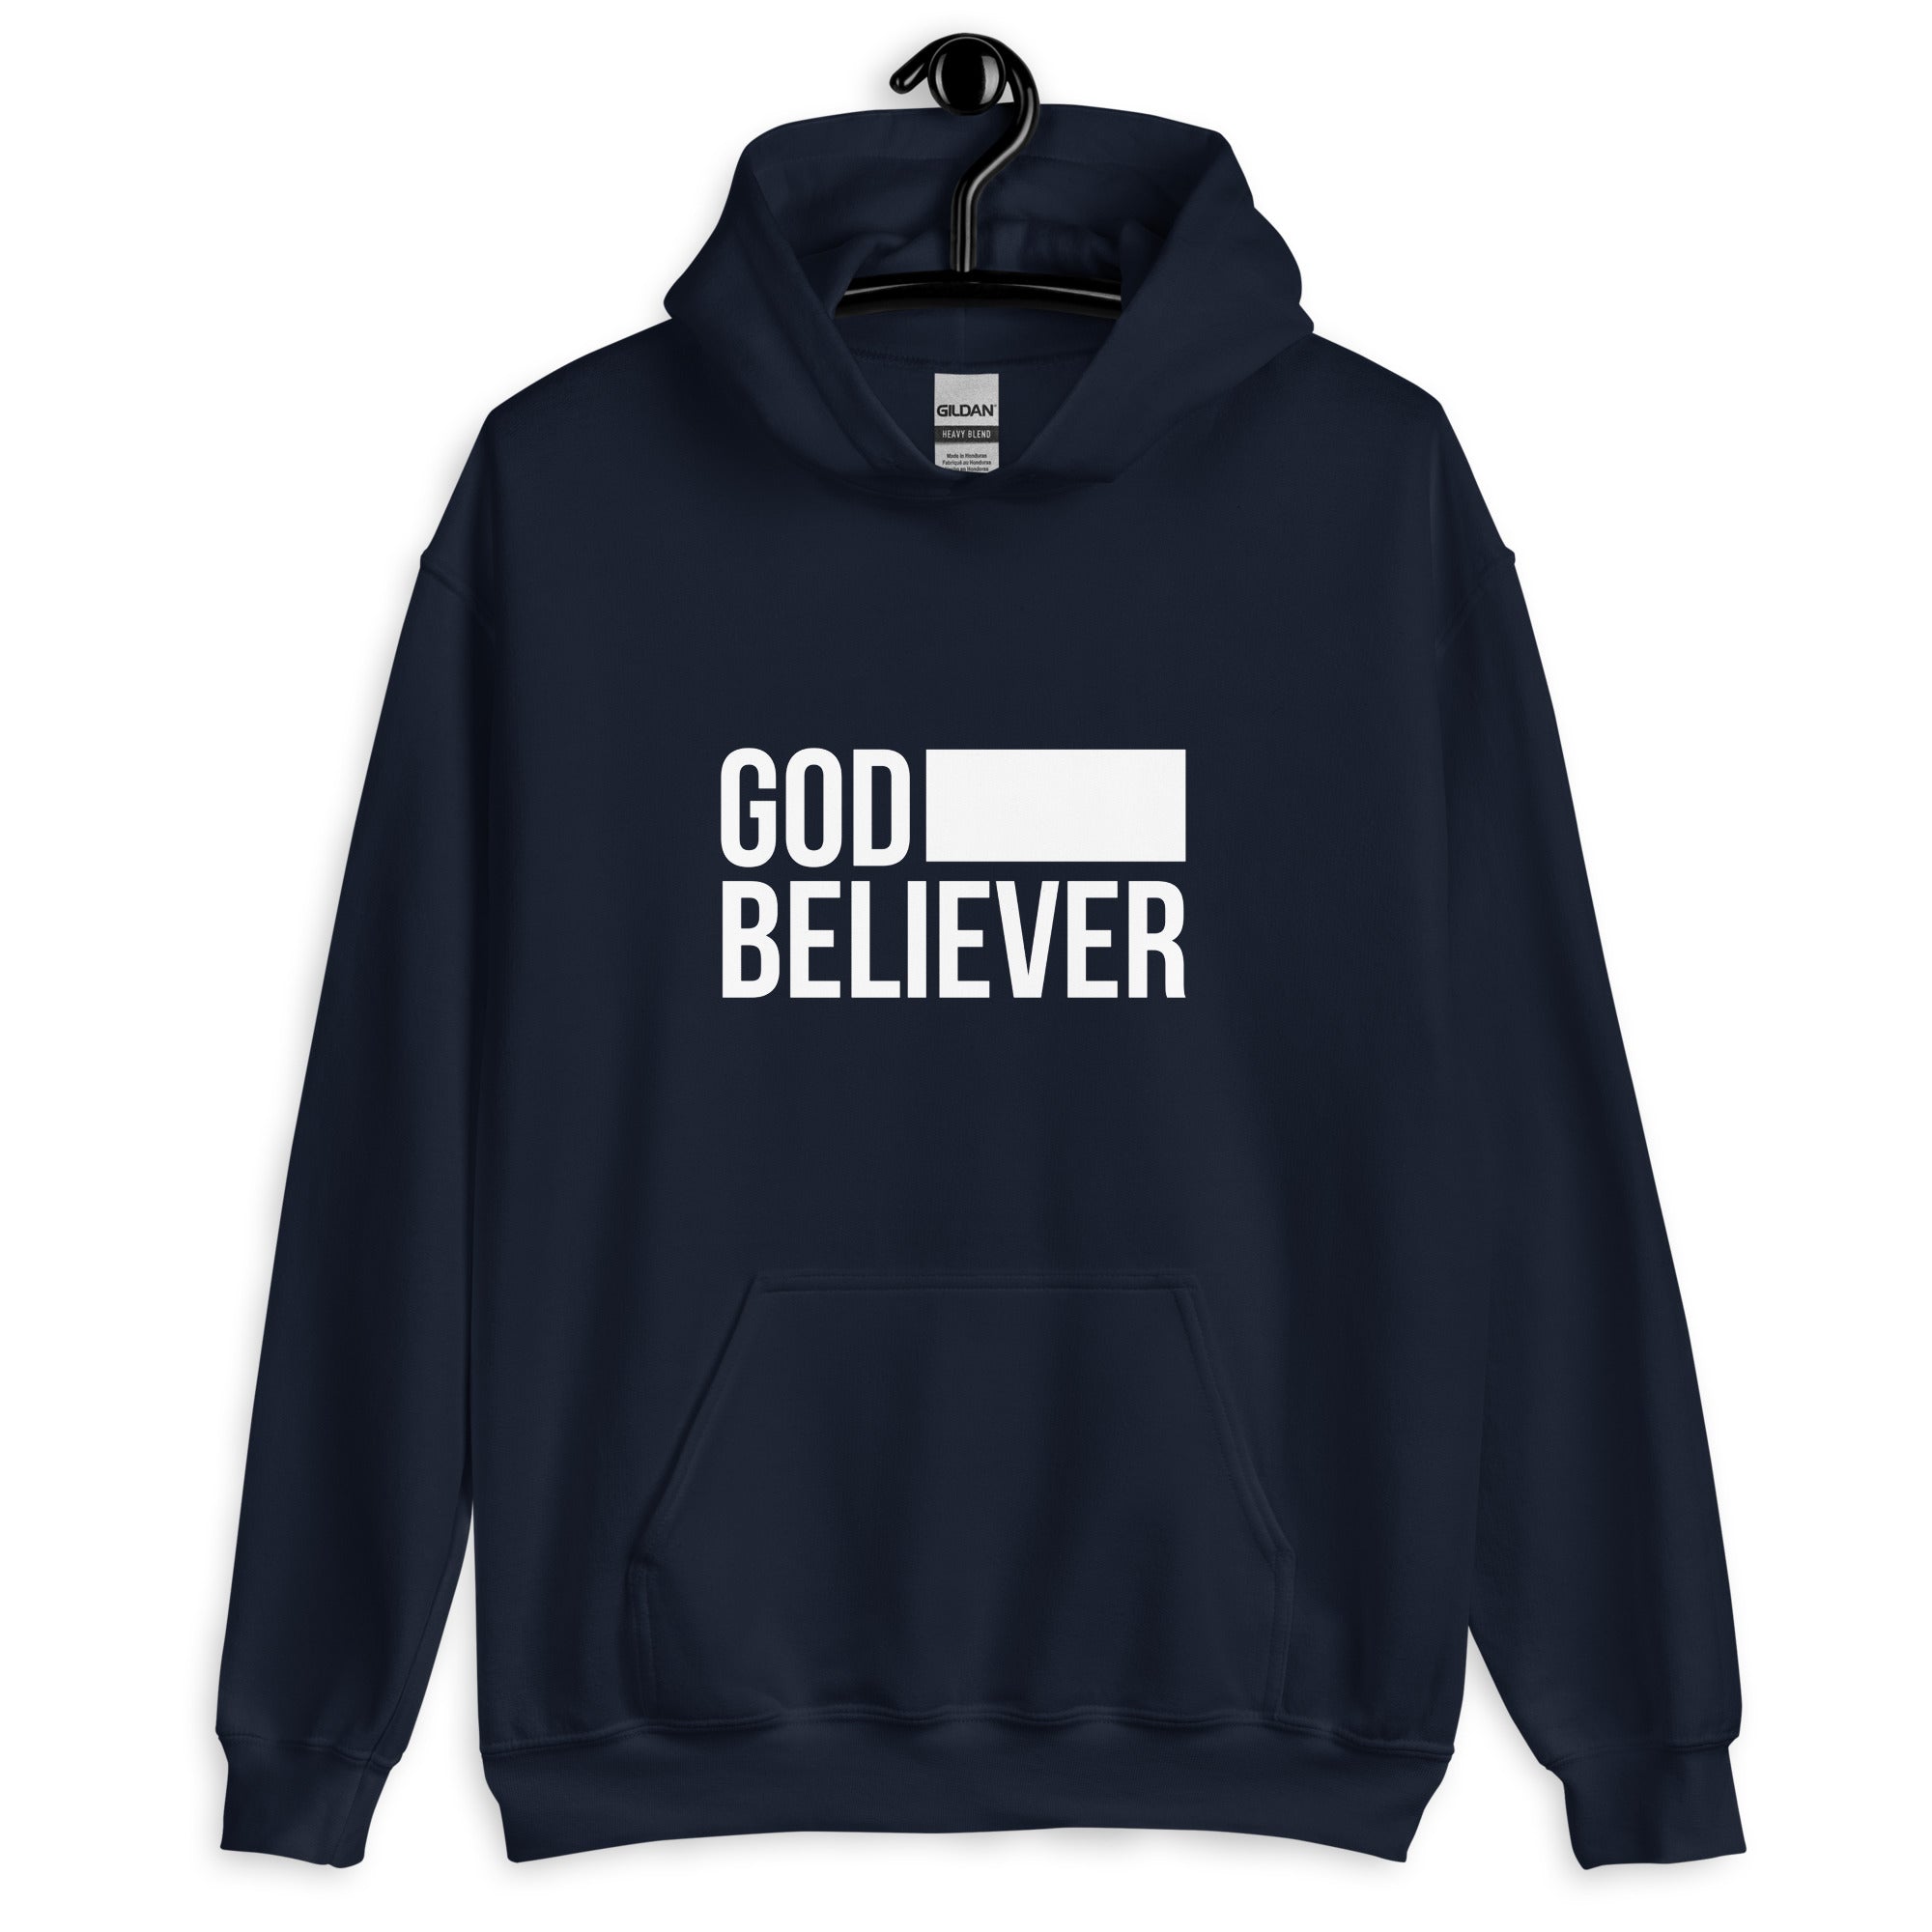 God Believer Sweatshirt